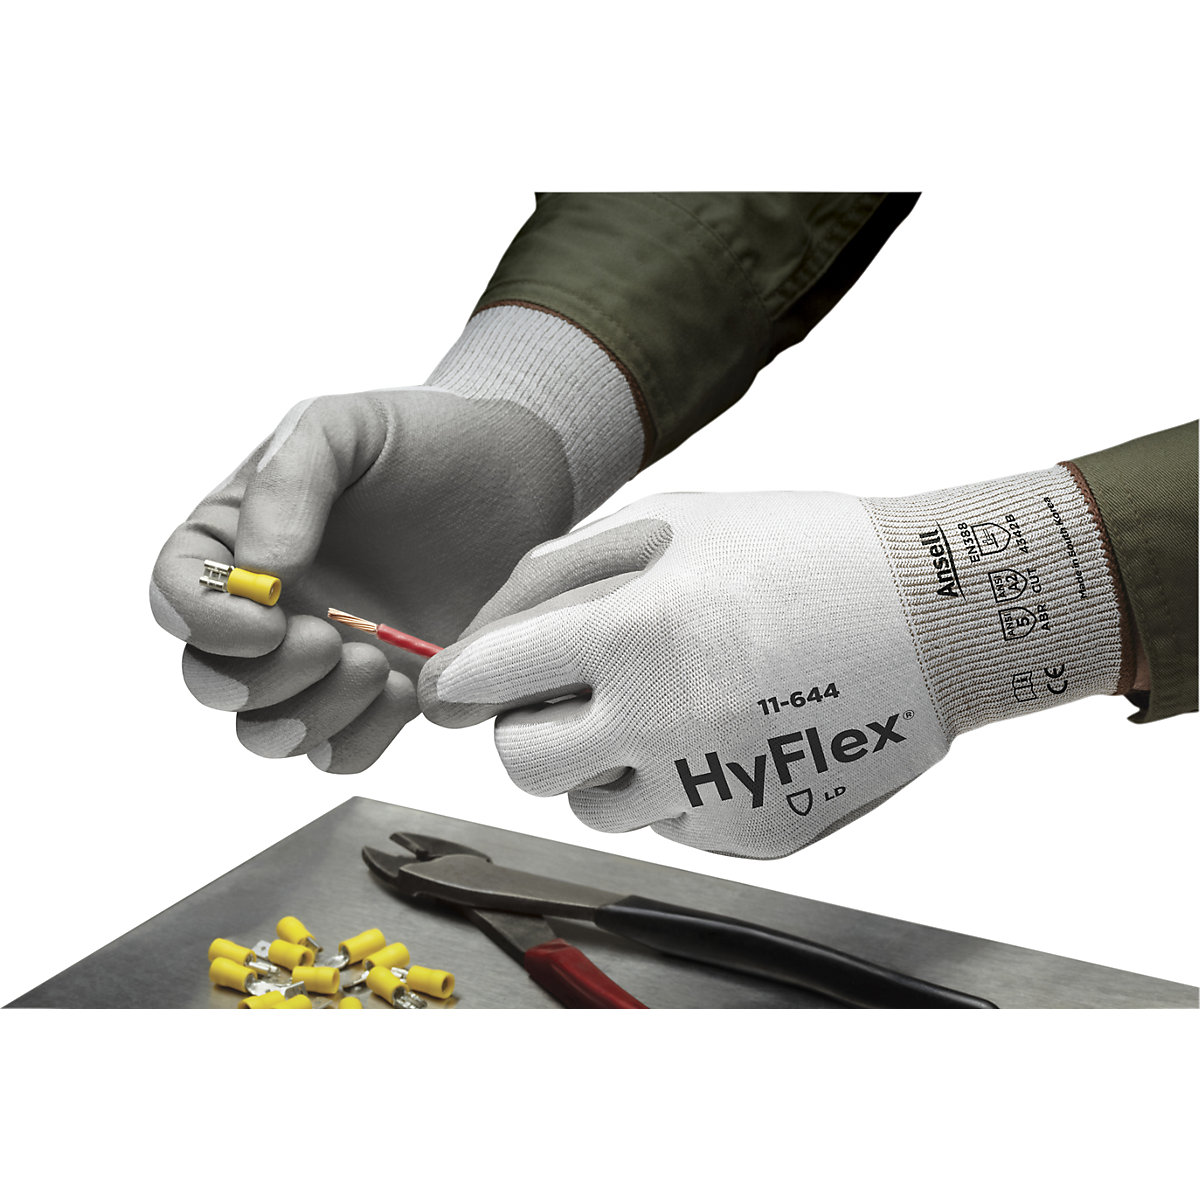 Luva de trabalho HyFlex® 11-644 – Ansell (Imagem do produto 5)-4